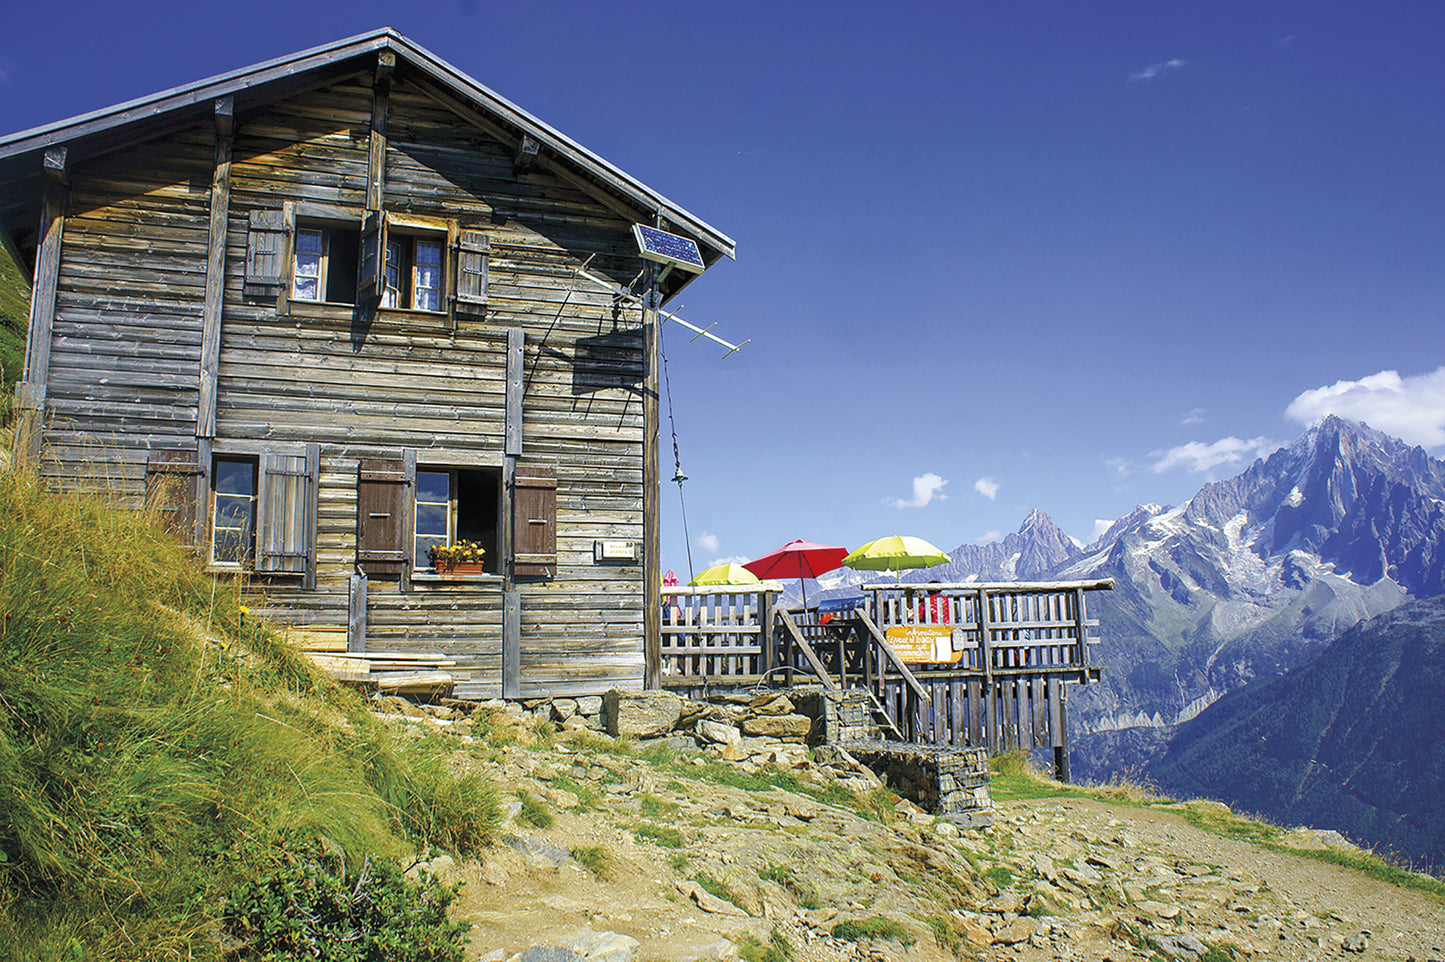 Trekking the Tour du Mont Blanc Cicerone | Tour du Mont Blanc Guide Book | Backcountry Books